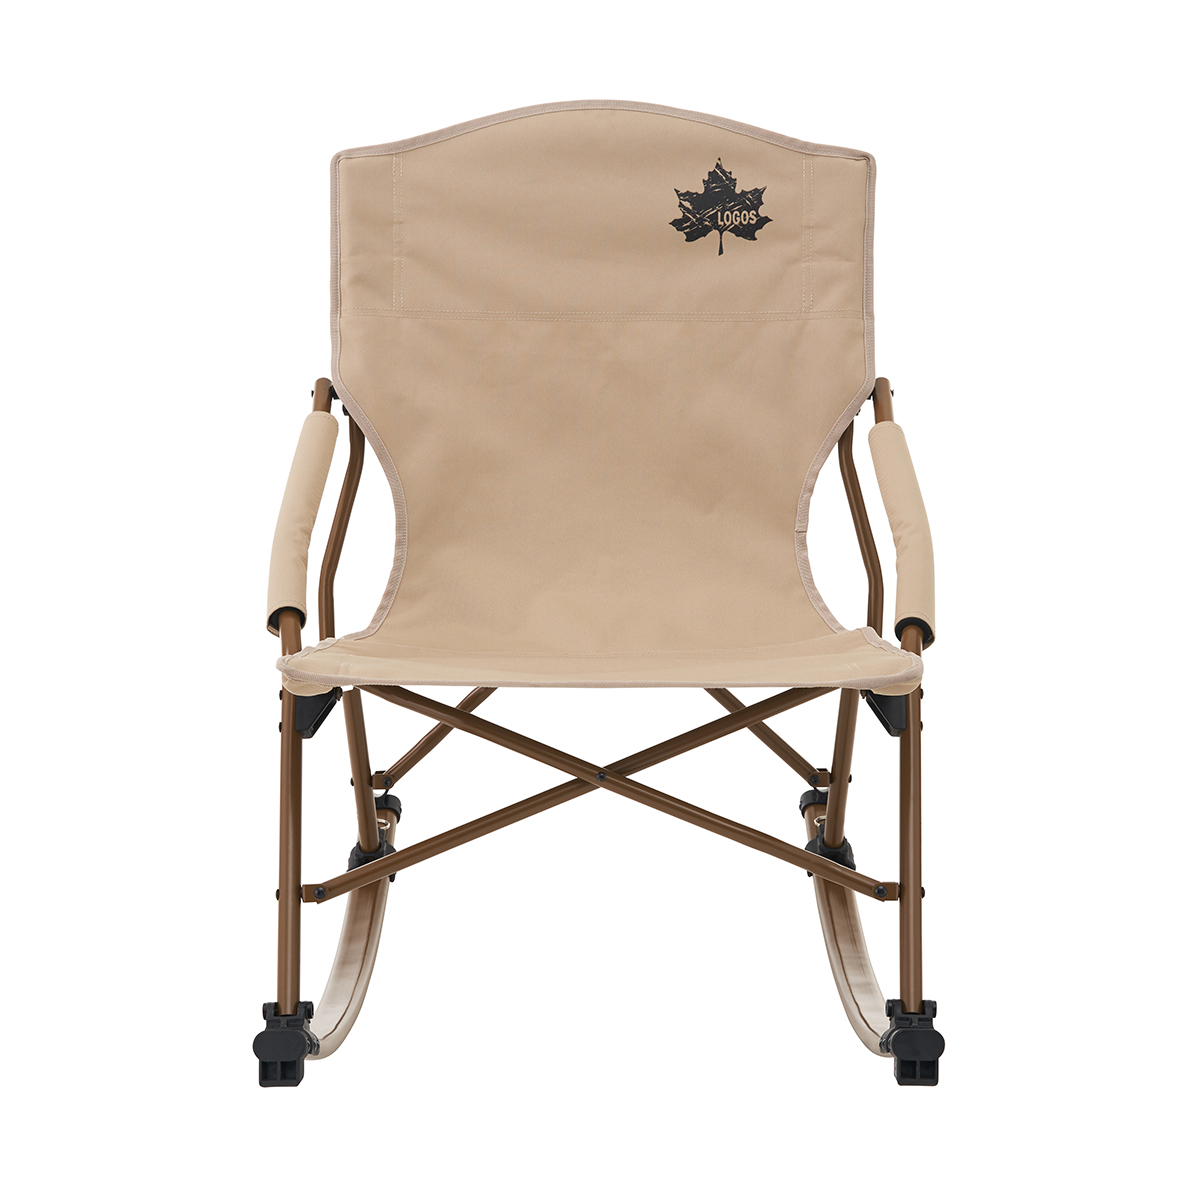 Tradcanvas スウィングチェア|ギア|家具|椅子・ベンチ|製品情報|ロゴス 